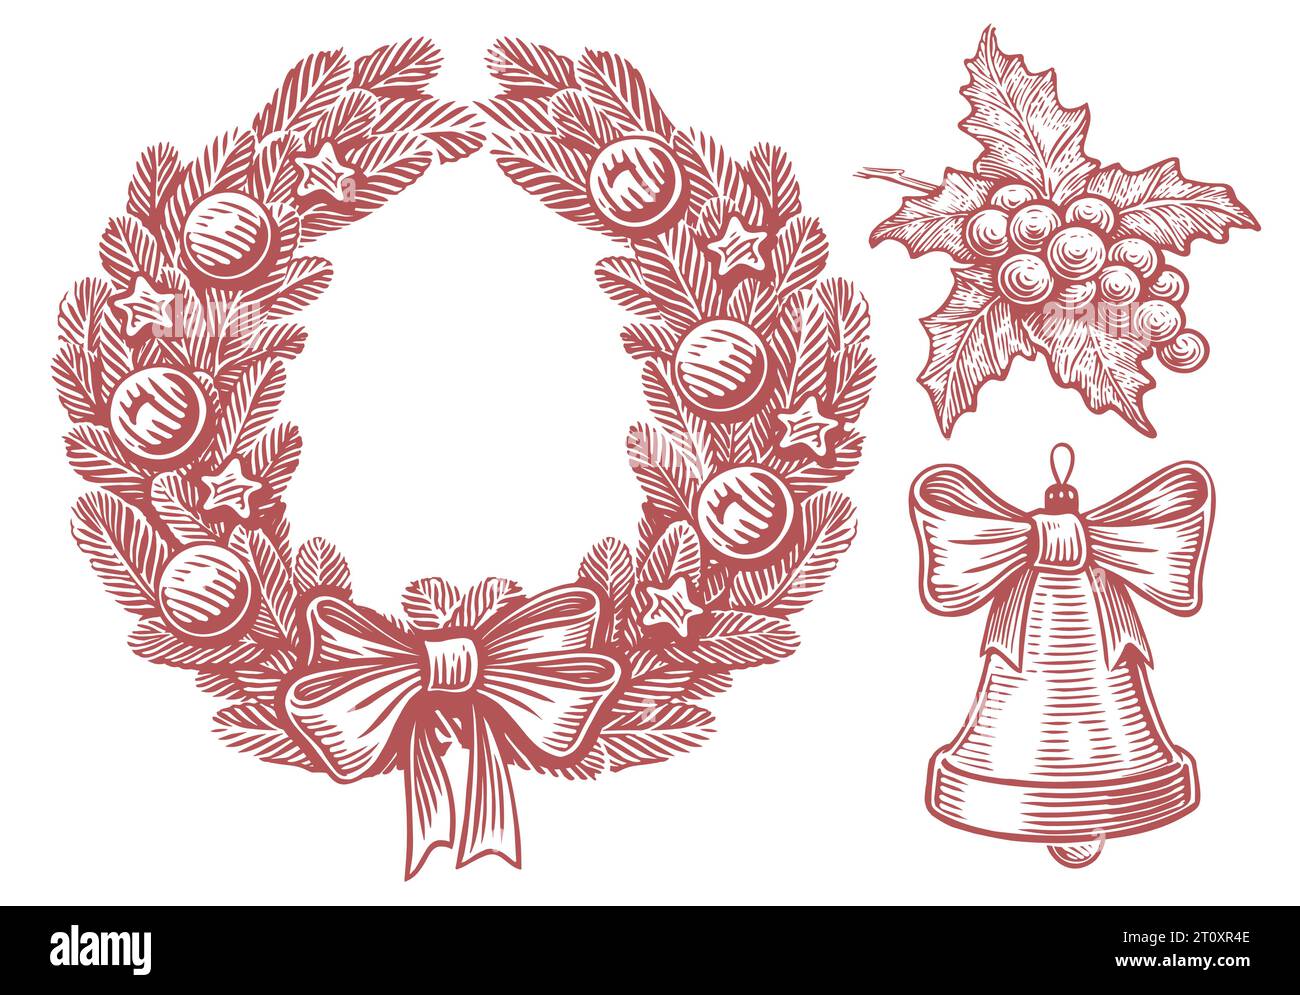 Corona de Navidad ramitas de abeto y bolas y lazo, campana, bayas de acebo. Dibujado a mano ilustración vectorial de boceto vintage Ilustración del Vector